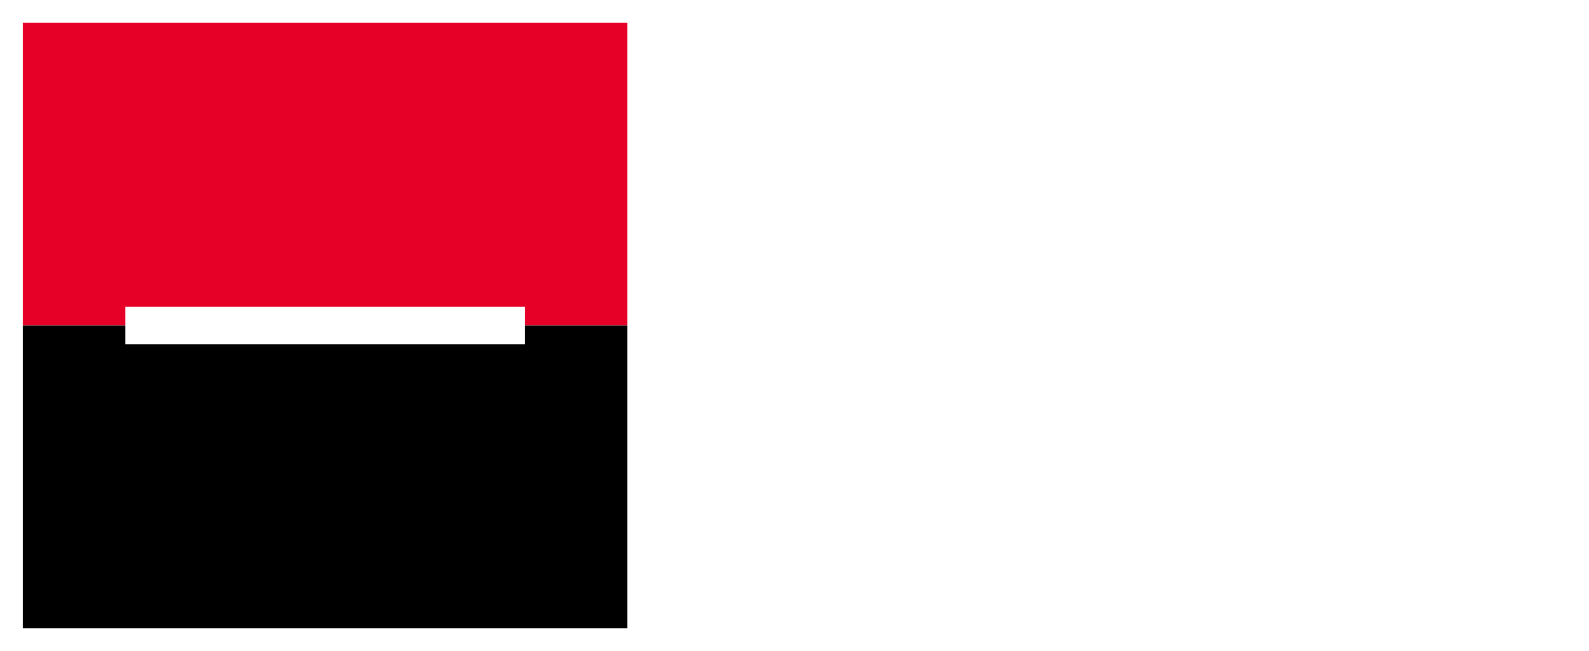 Komerční banka logo large for dark backgrounds (transparent PNG)